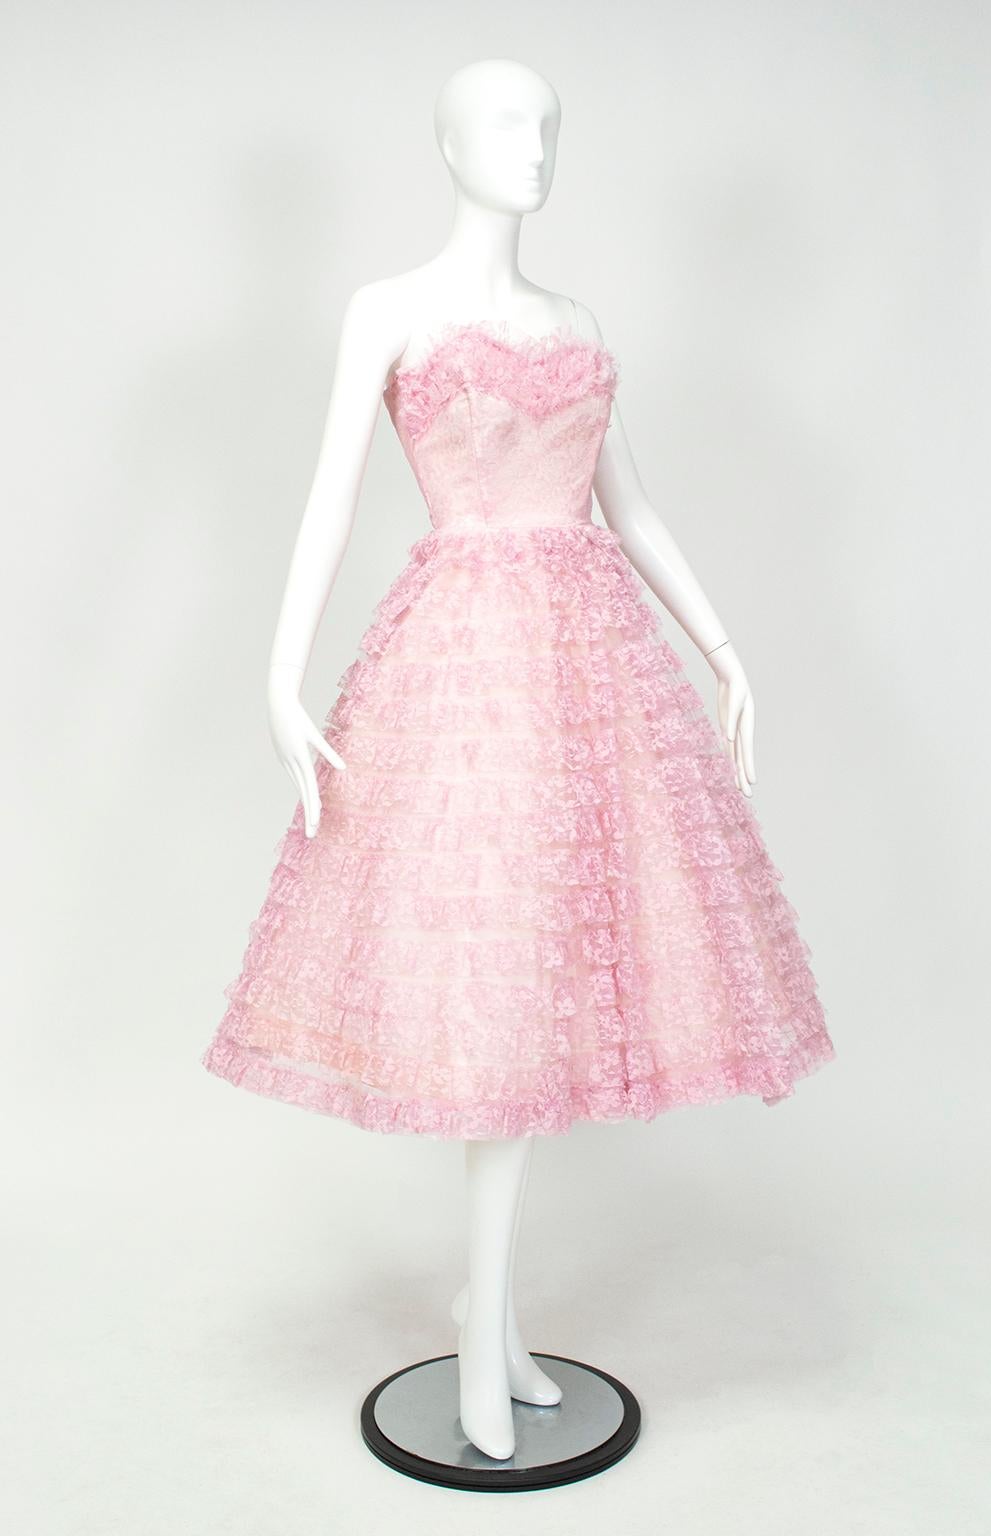 Dieses bonbonfarbene Konfekt zwischen Rosa und Lavendel ähnelt einem Haute-Couture-Kleid von Christian Dior, das bei der Resort/Cruise-Show 2011 in Shanghai vorgestellt wurde.  Das Dior-Modell war mit einem geschätzten Preis von 150.000 Dollar etwas